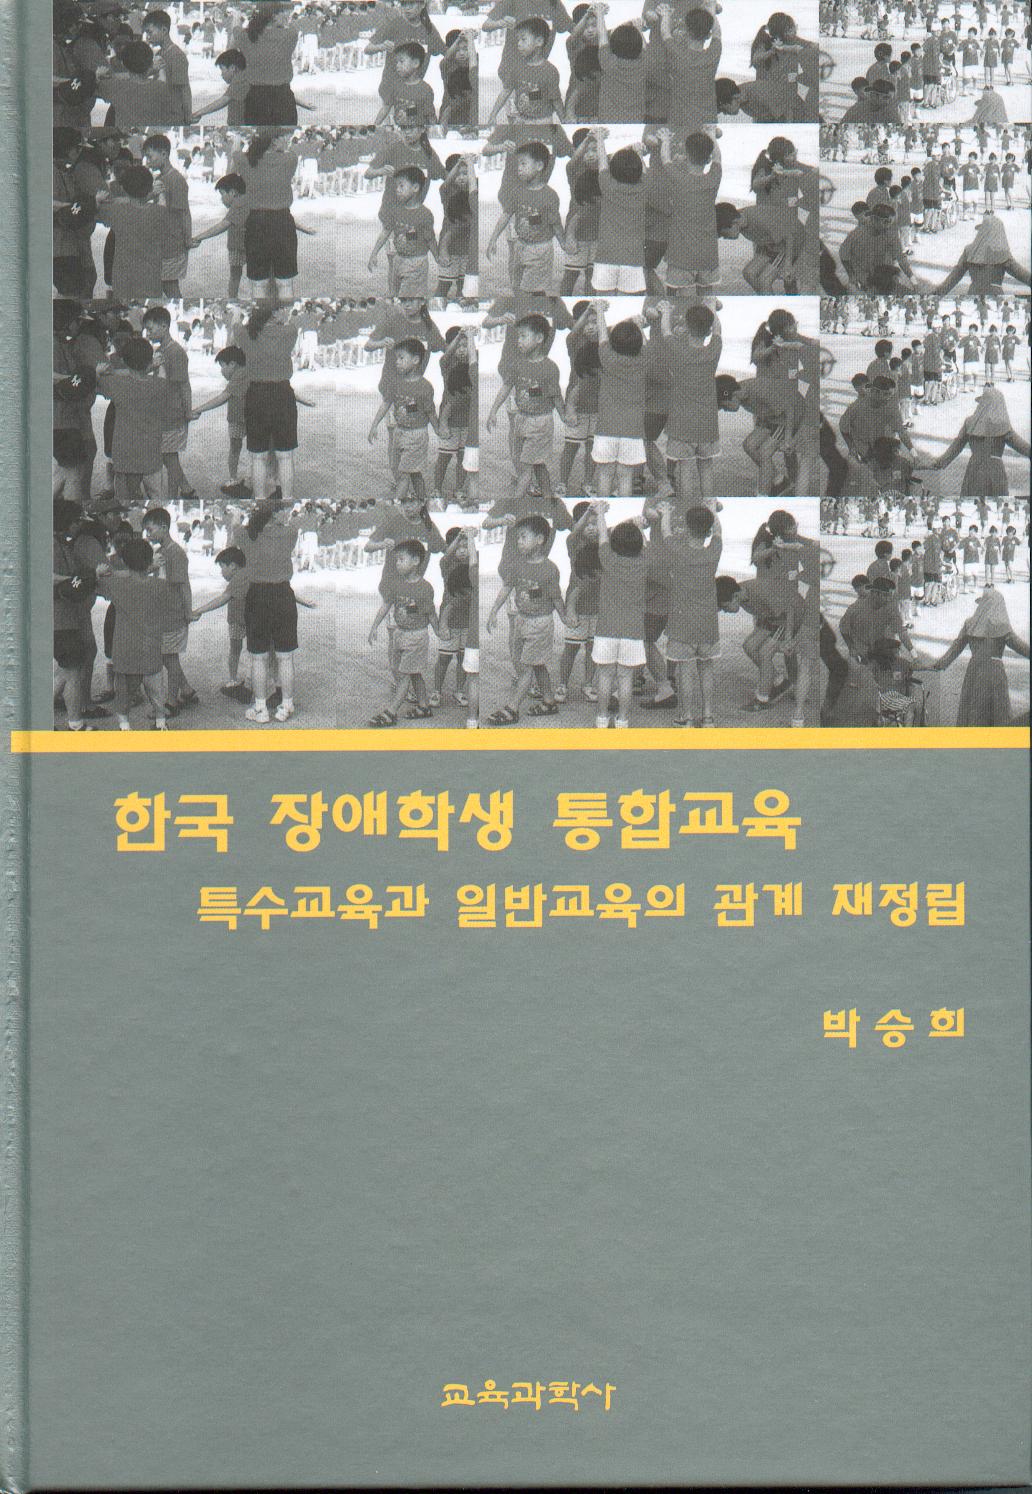 한국장애학생 통합교육-특수교육과 일반교육의 관계재정립